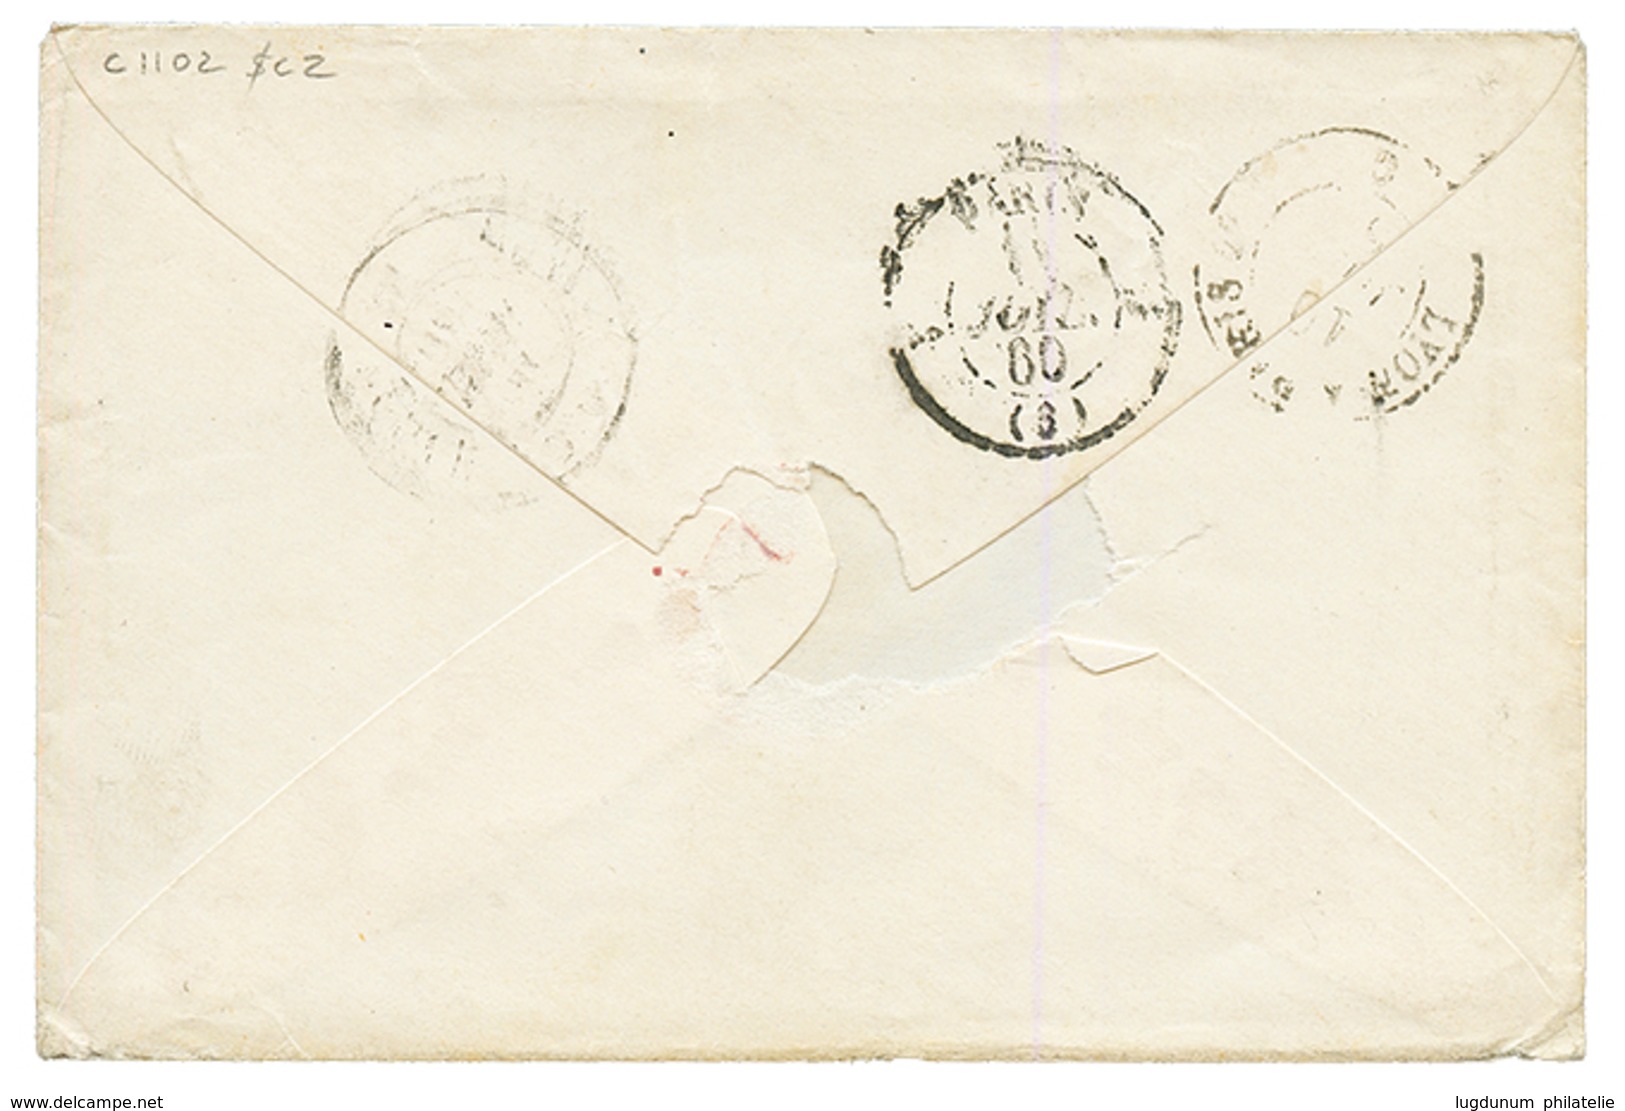 1860 FRANCE 20c(n°14) Obl. Cachet Sarde EVIAN Sur Enveloppe Pour PARIS. TB. - 1849-1876: Periodo Clásico